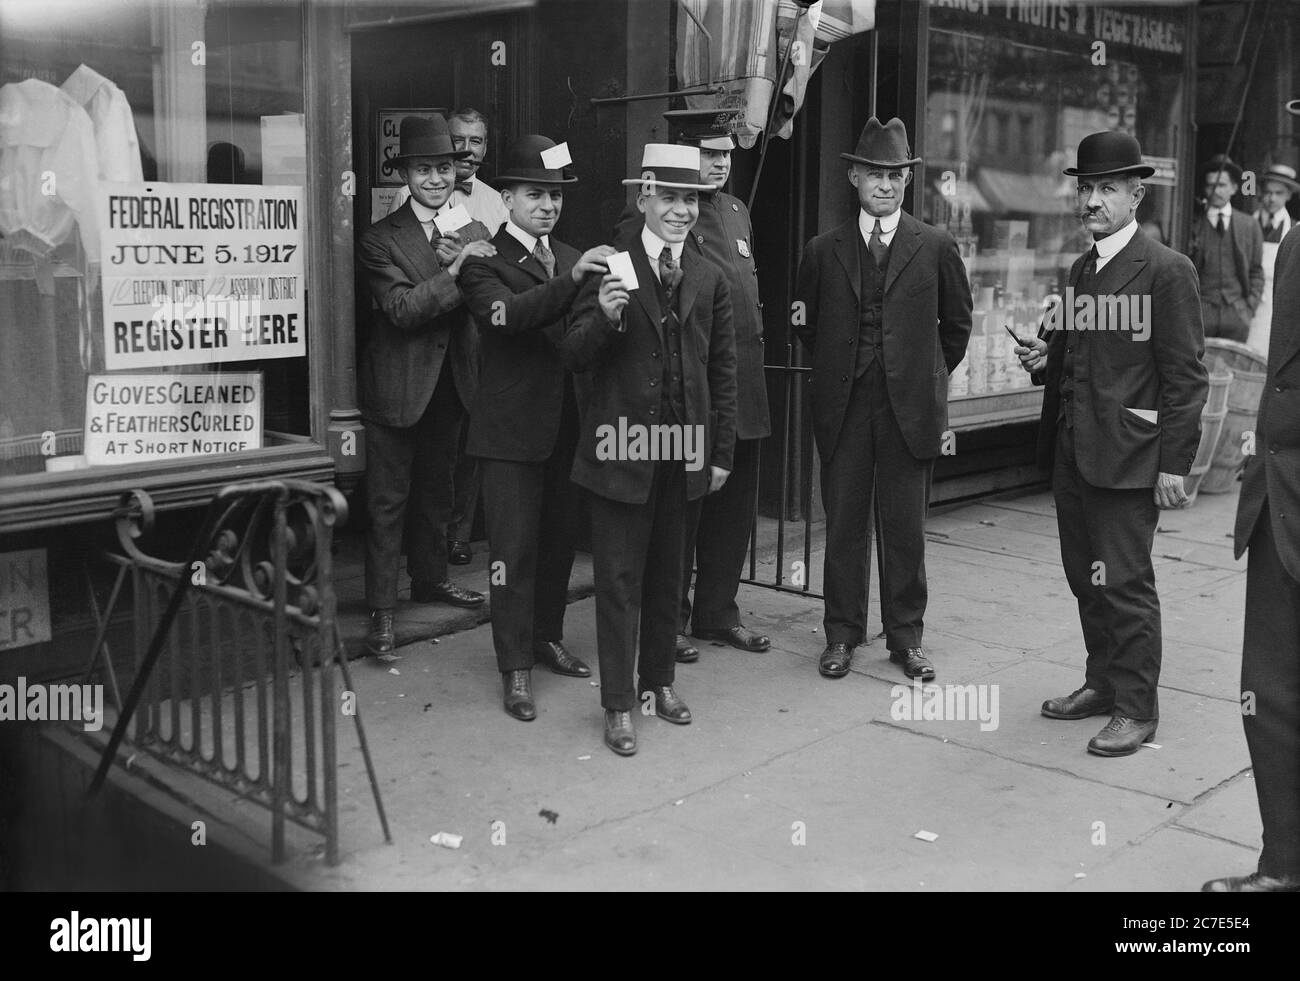 Männer mit Entwurfskarten, die aus dem Gebäude kommen, nachdem sie sich während des Ersten Weltkriegs für den Entwurf registriert haben, New York City, New York, USA, Bain News Service, 5. Juni 1917 Stockfoto